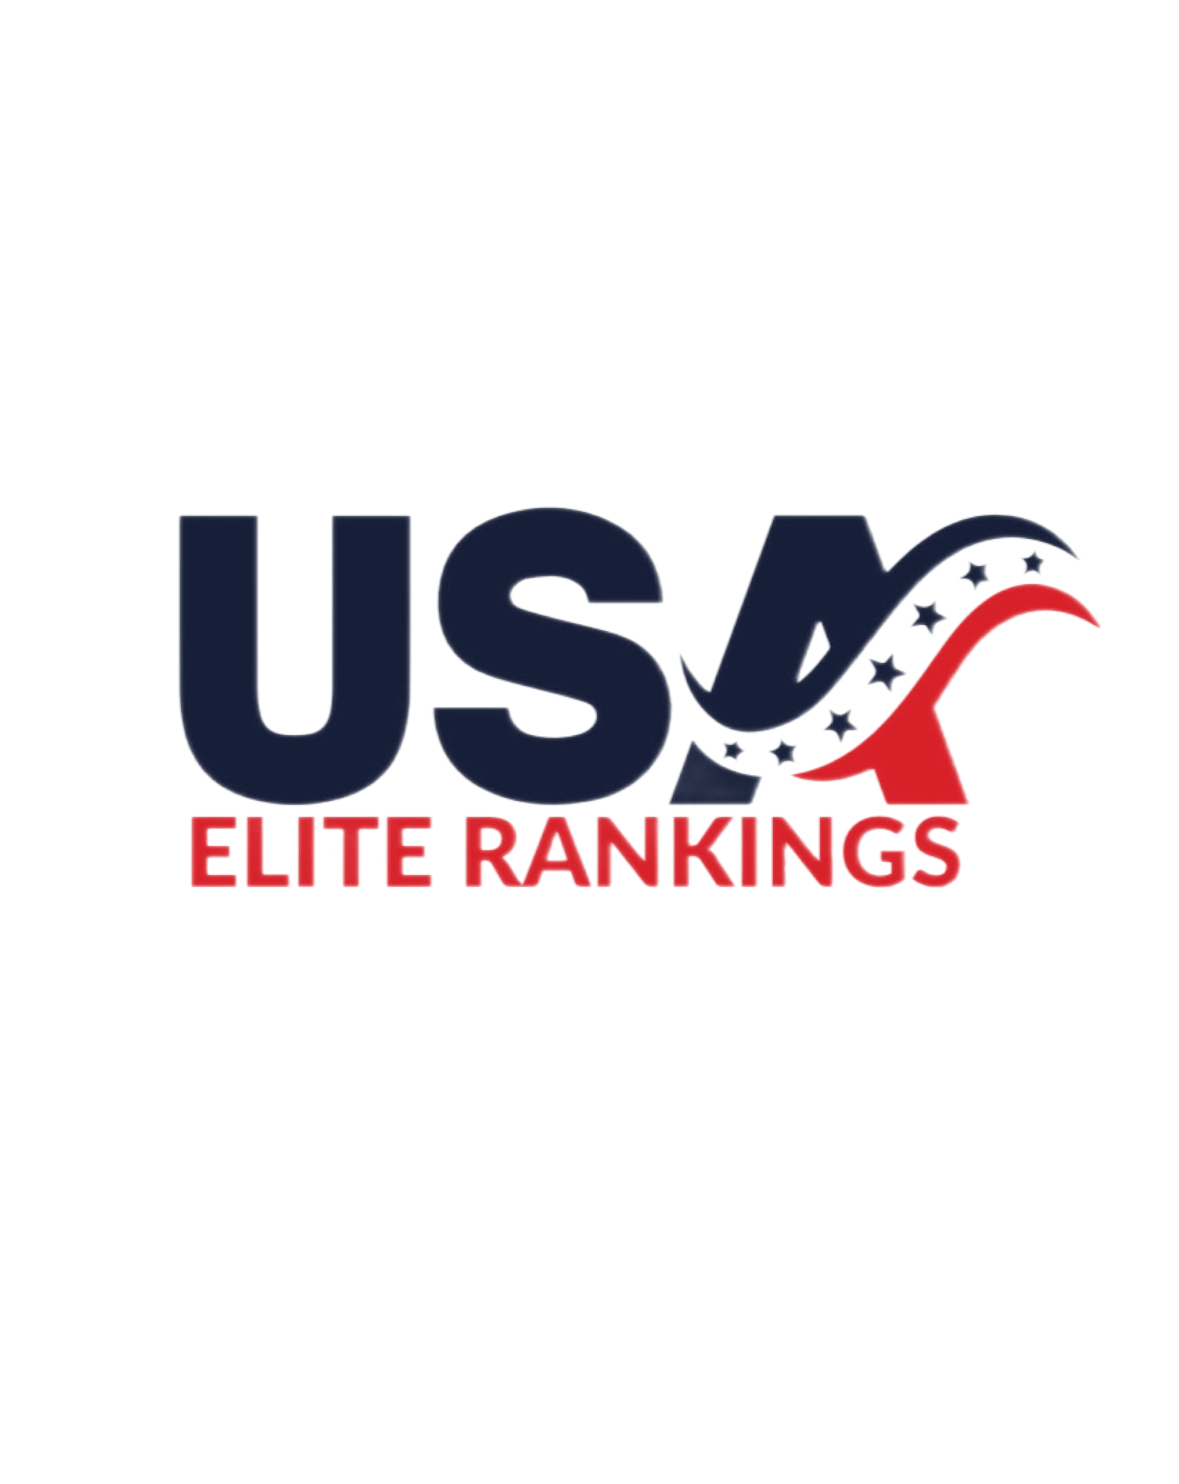 USA Elite Rankings